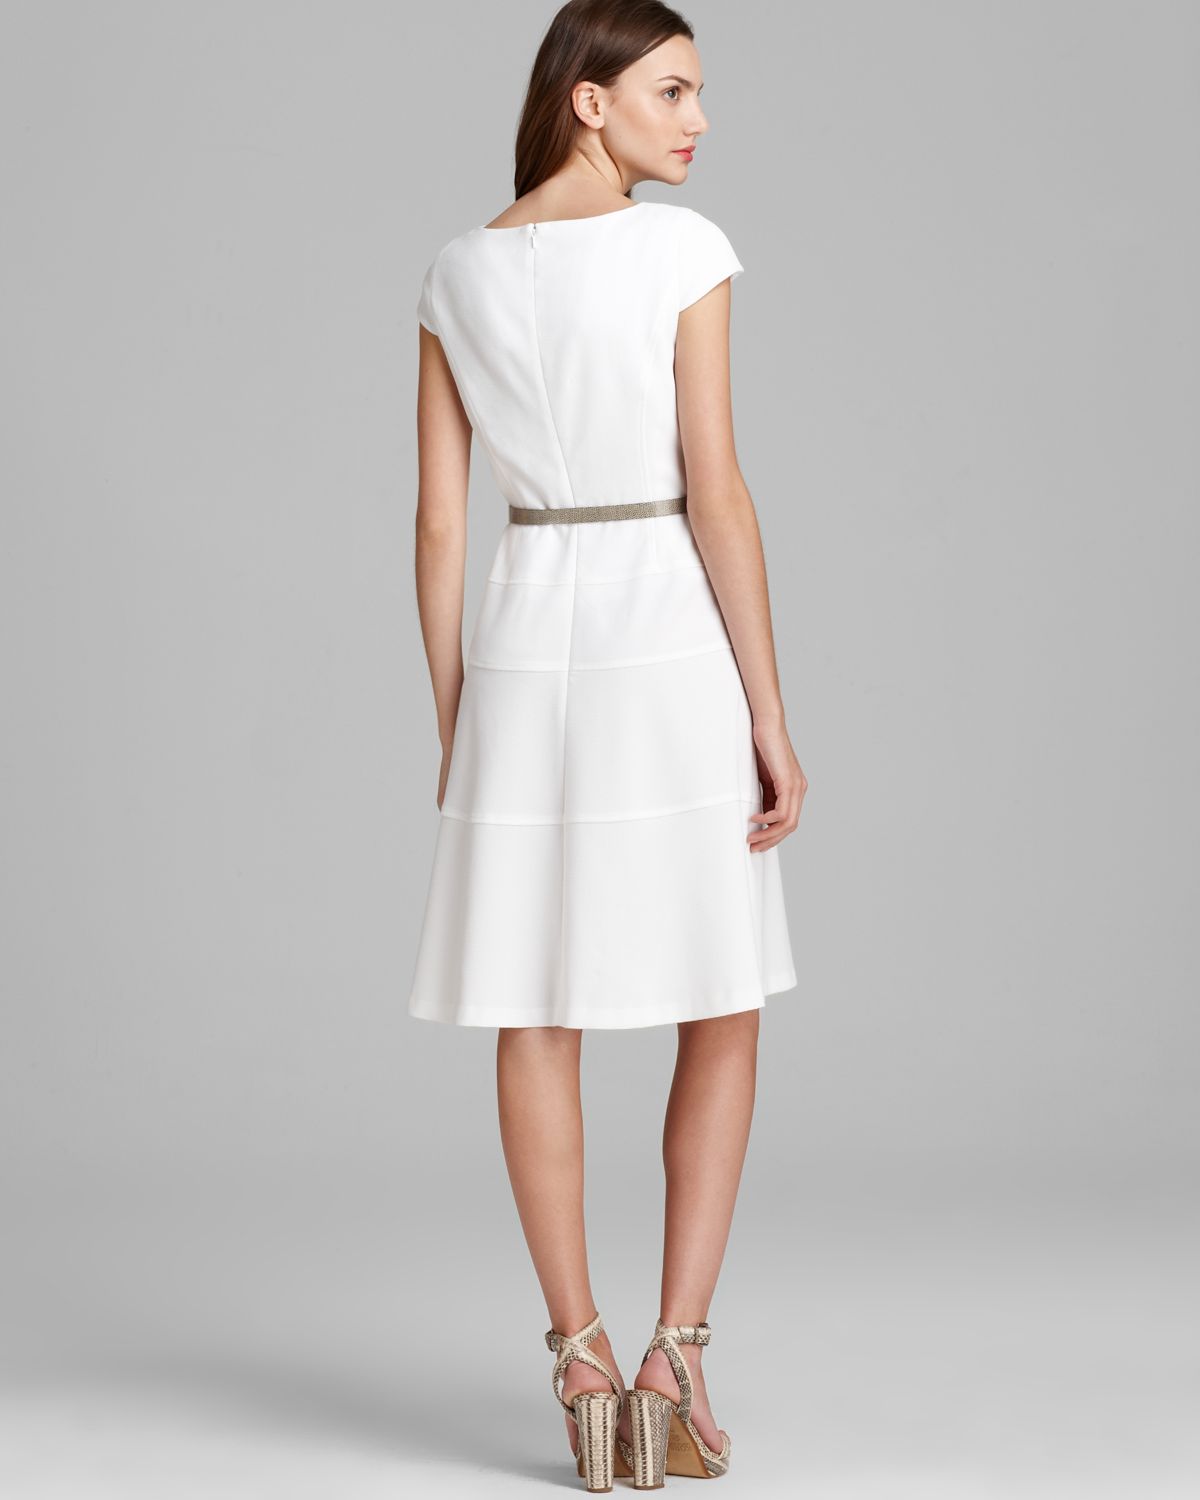 Lyst - Anne Klein Swing Dress Cap Sleeve in White